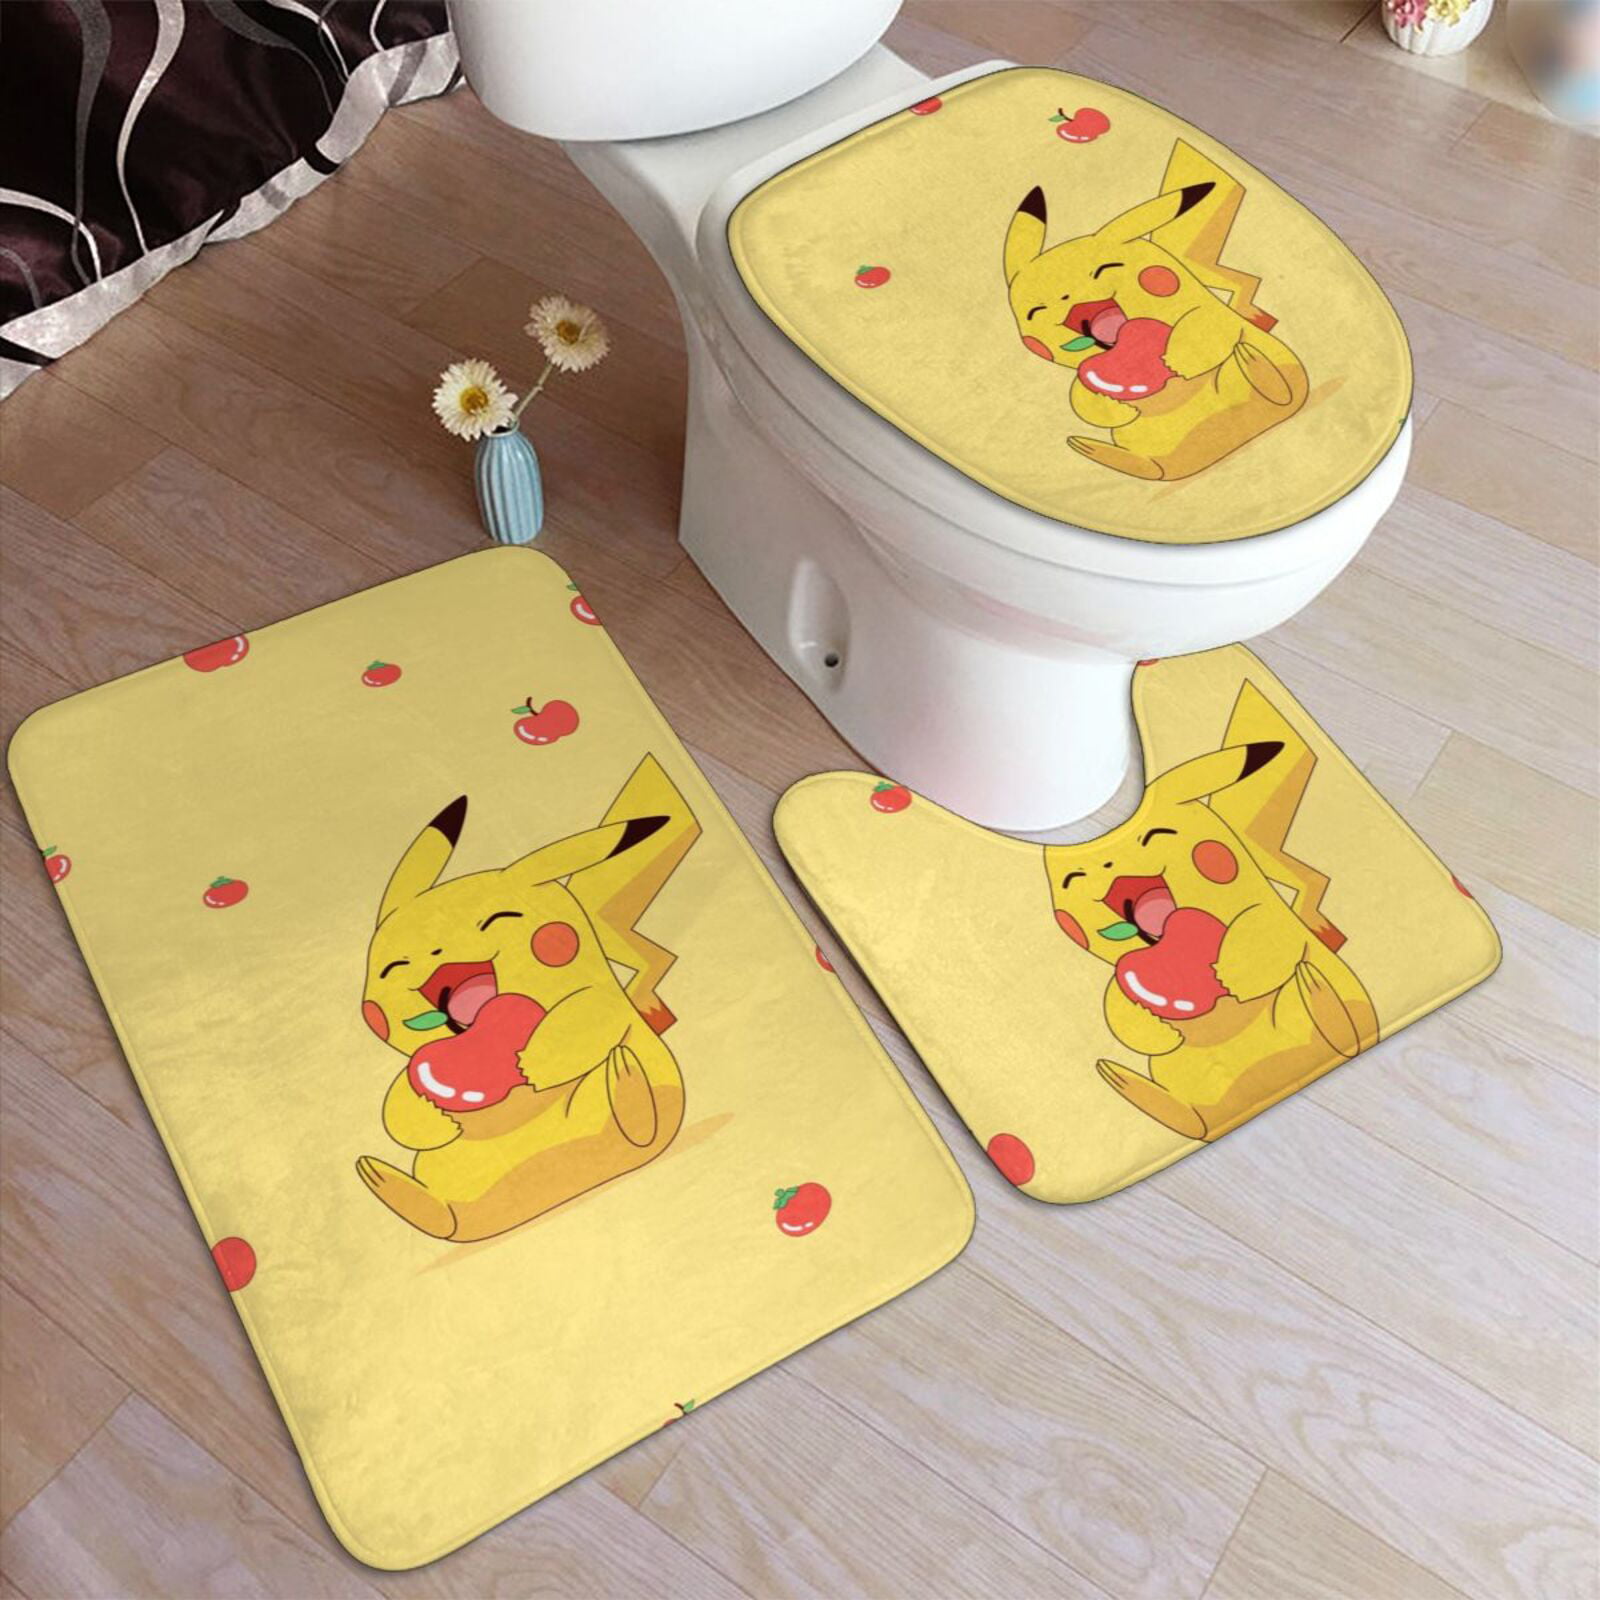 NEW Pikachu Pokemon WC Bedroom Bathmat Rug Toilet Floor Cover Carpet Non-slip